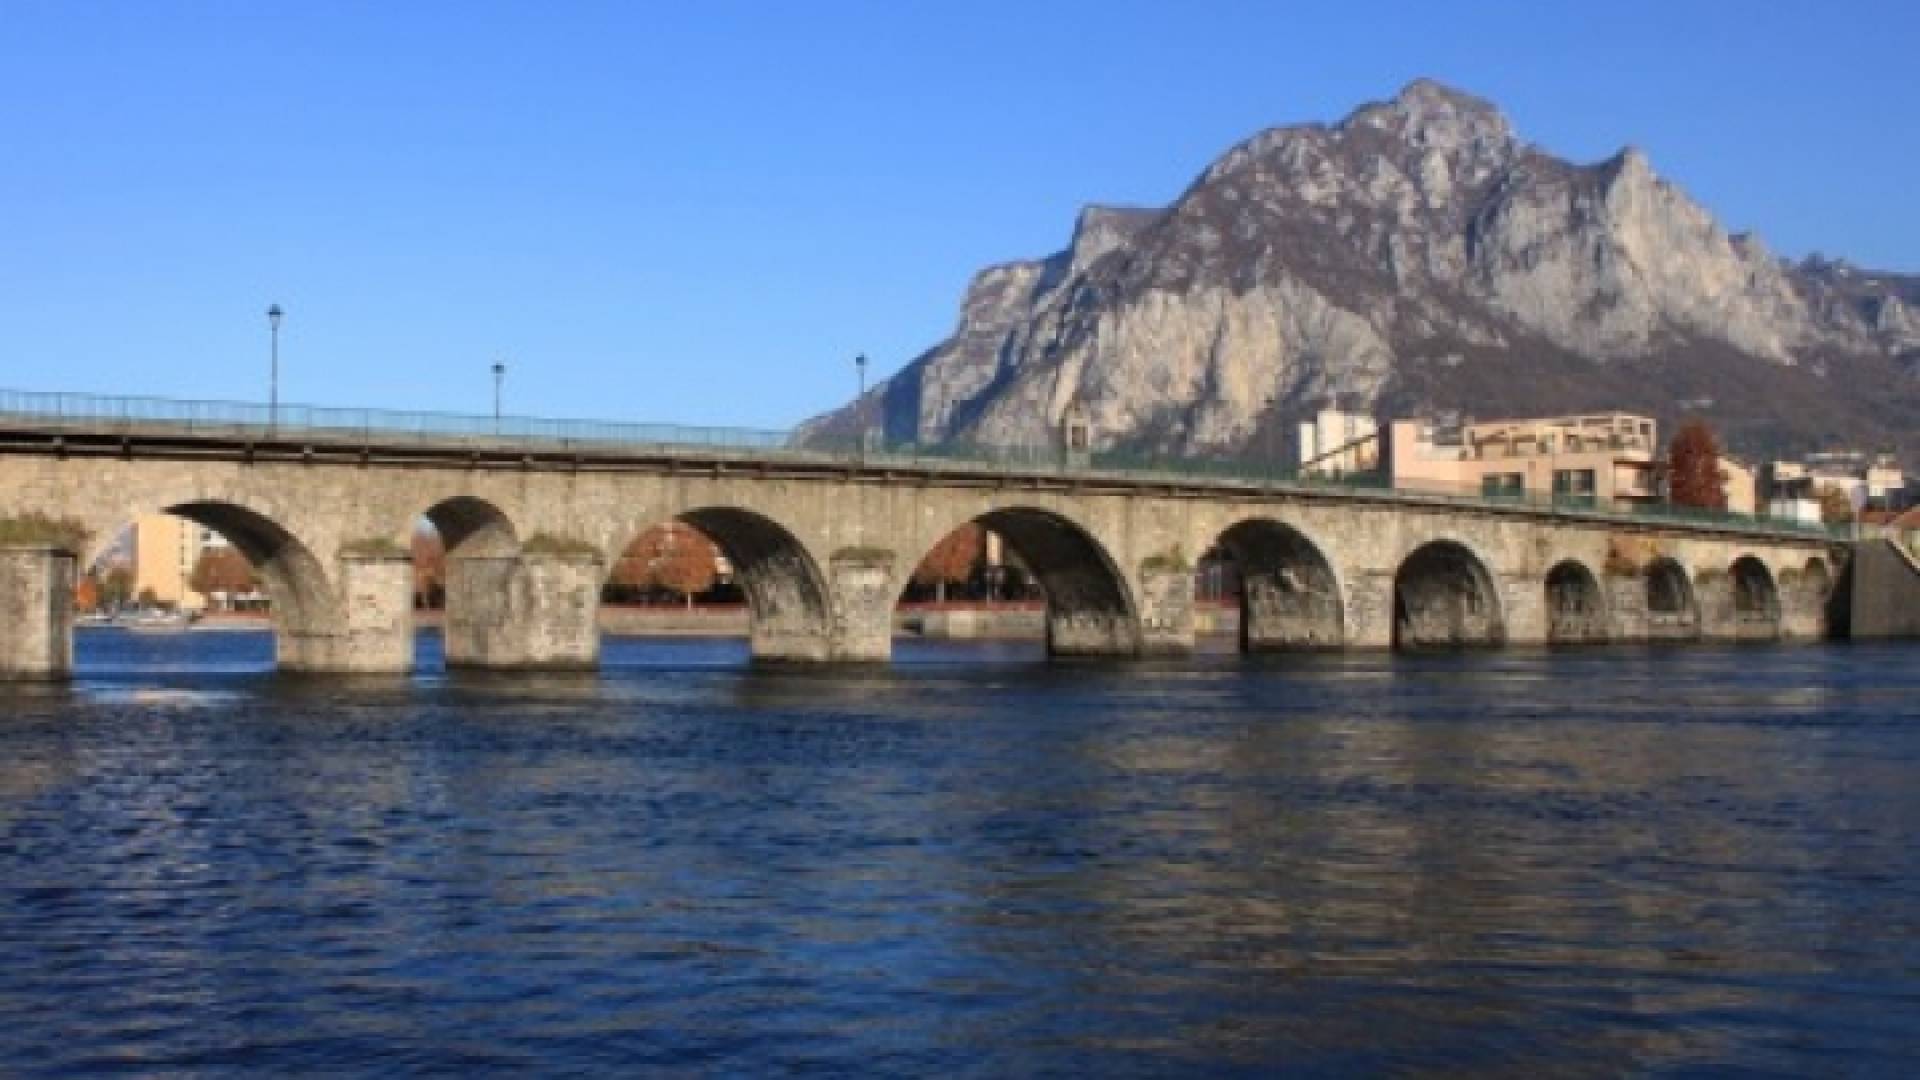 LECCO: PONTE VECCHIO BRIDGE, Lecco : Ponte Vecchio